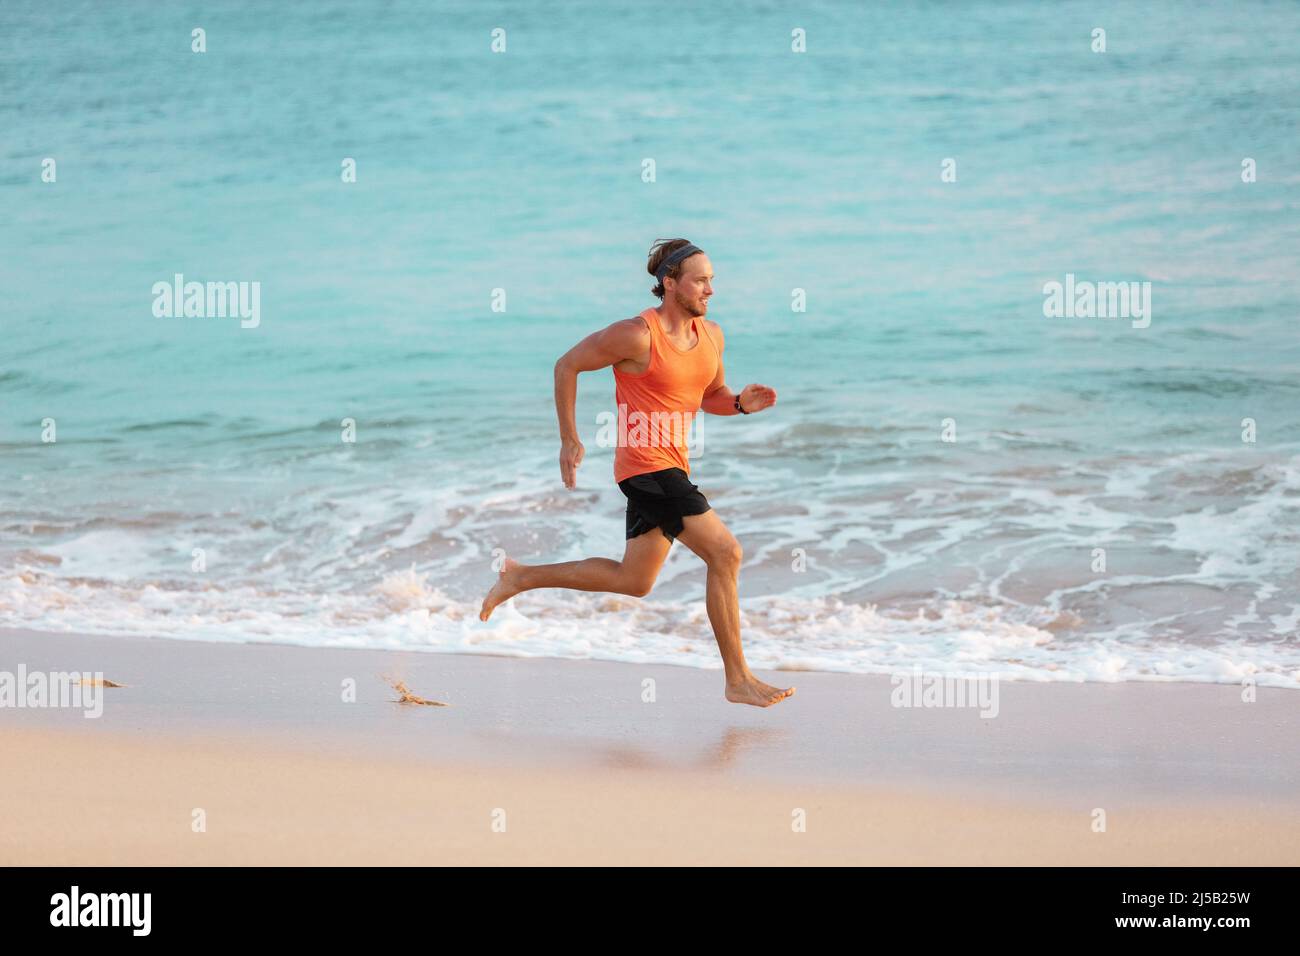 Hombre atleta corriendo en la playa sudoración entrenamiento cardio en intenso entrenamiento hiit a temperatura de verano. Estilo de vida deportivo activo de corredor masculino Foto de stock